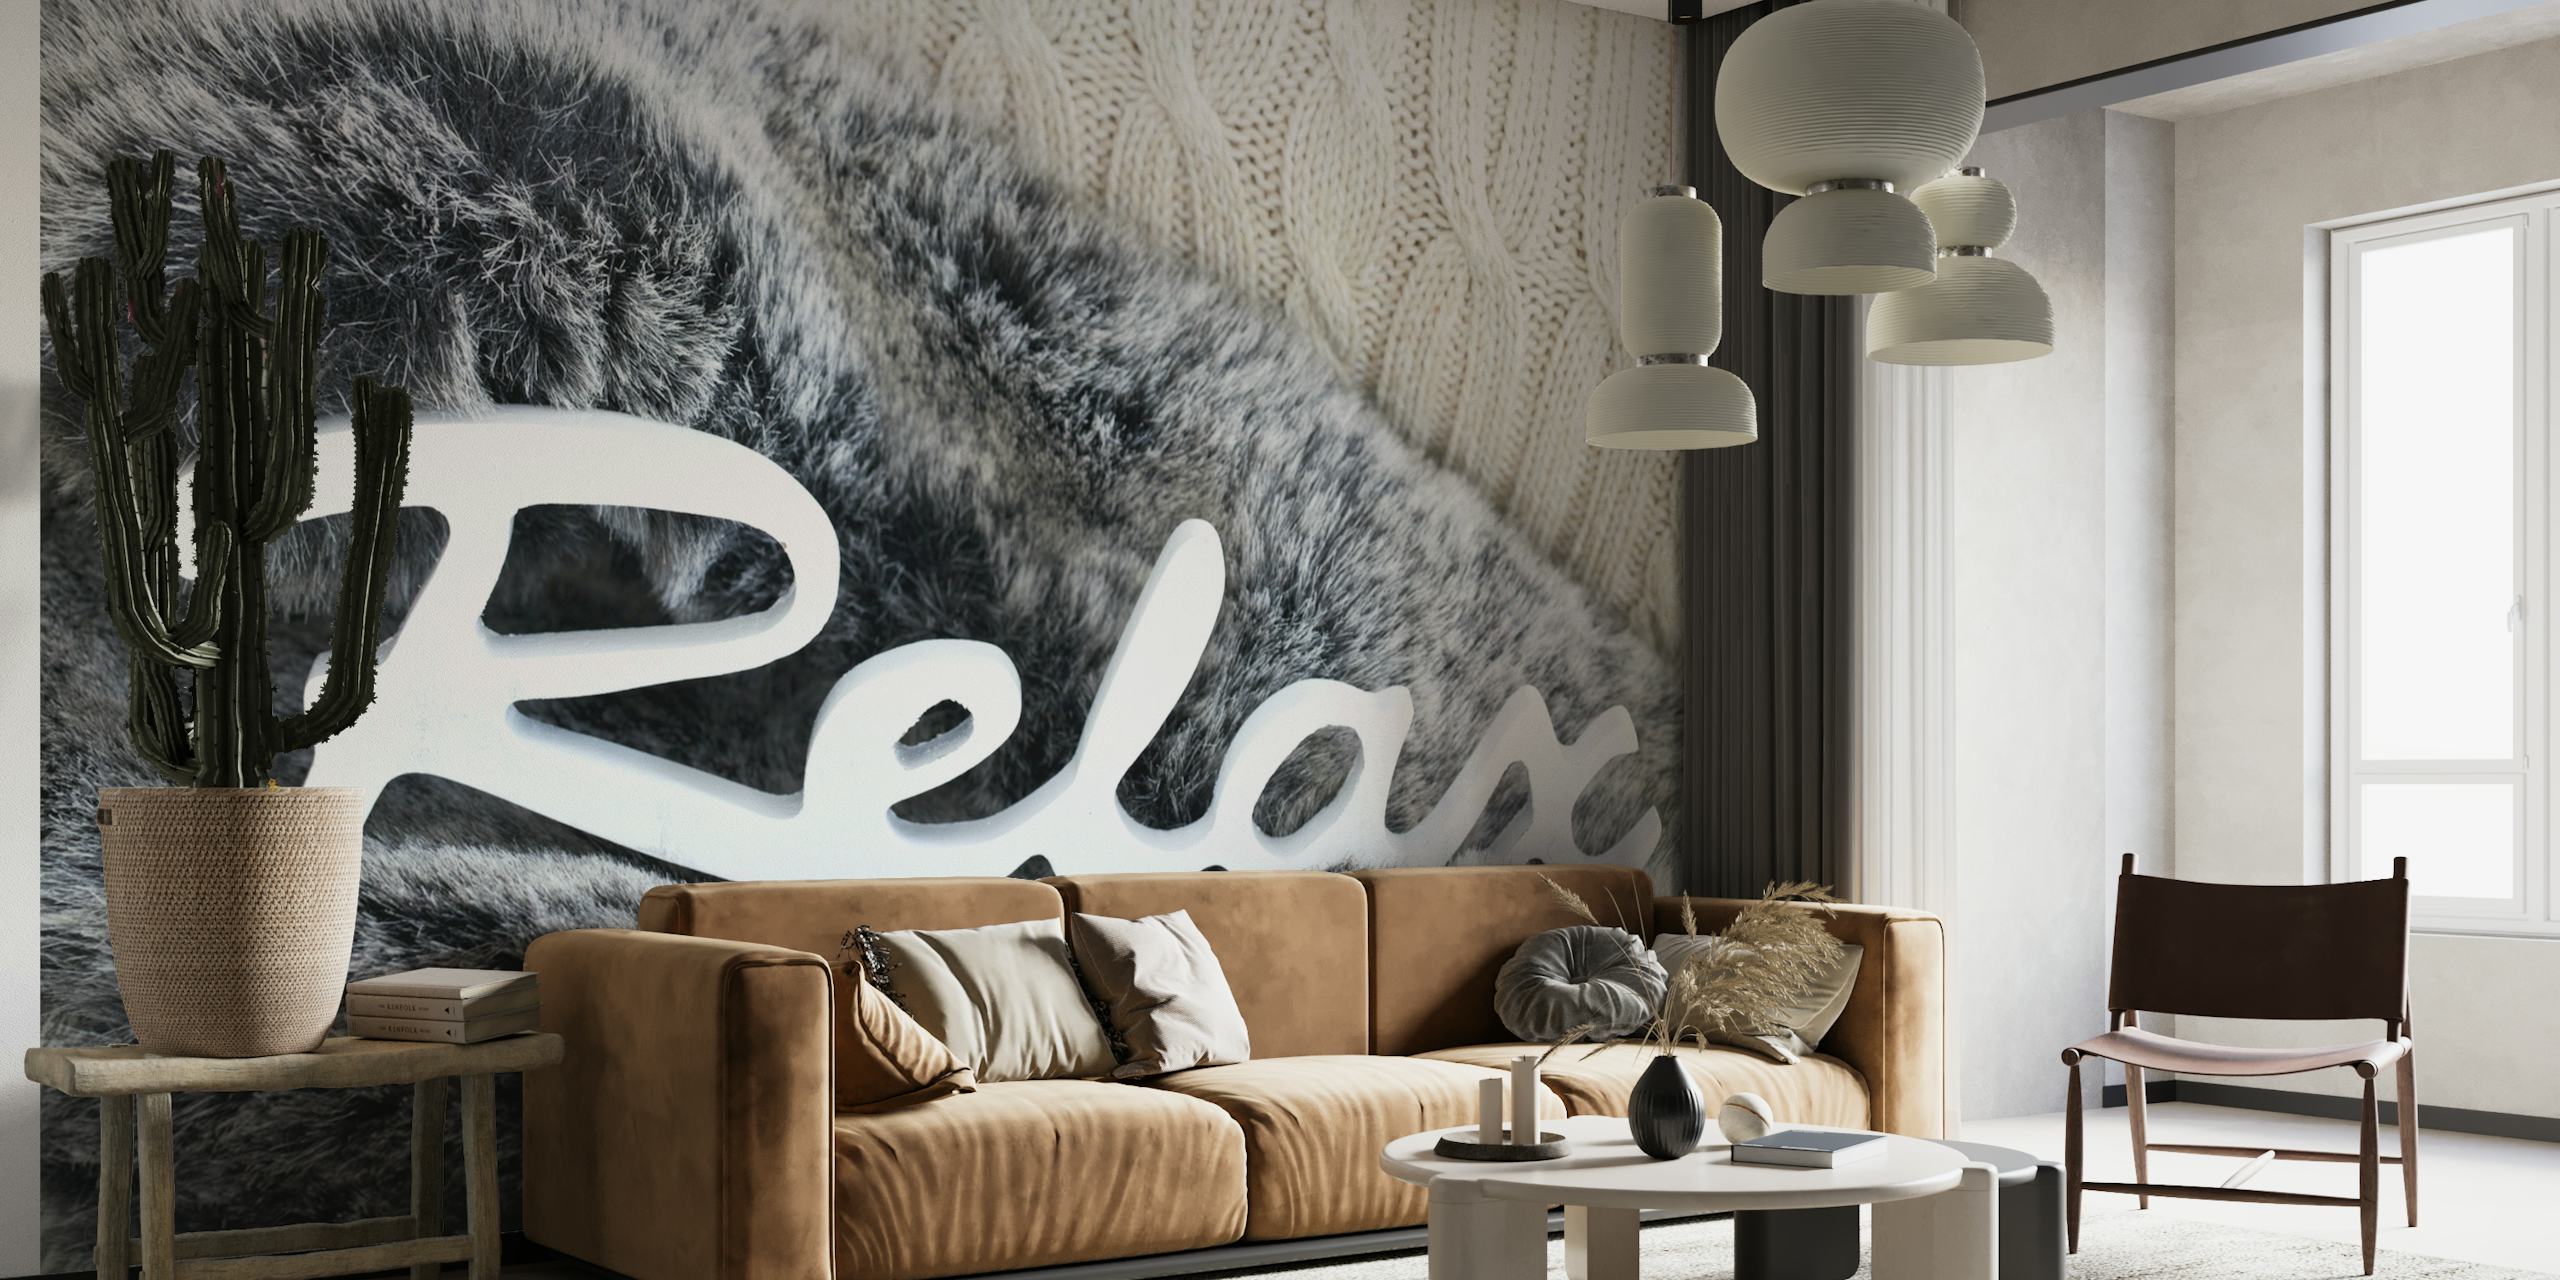 Fotobehang met gesimuleerde bonttextuur en het woord 'Relax' in stijlvol schrift